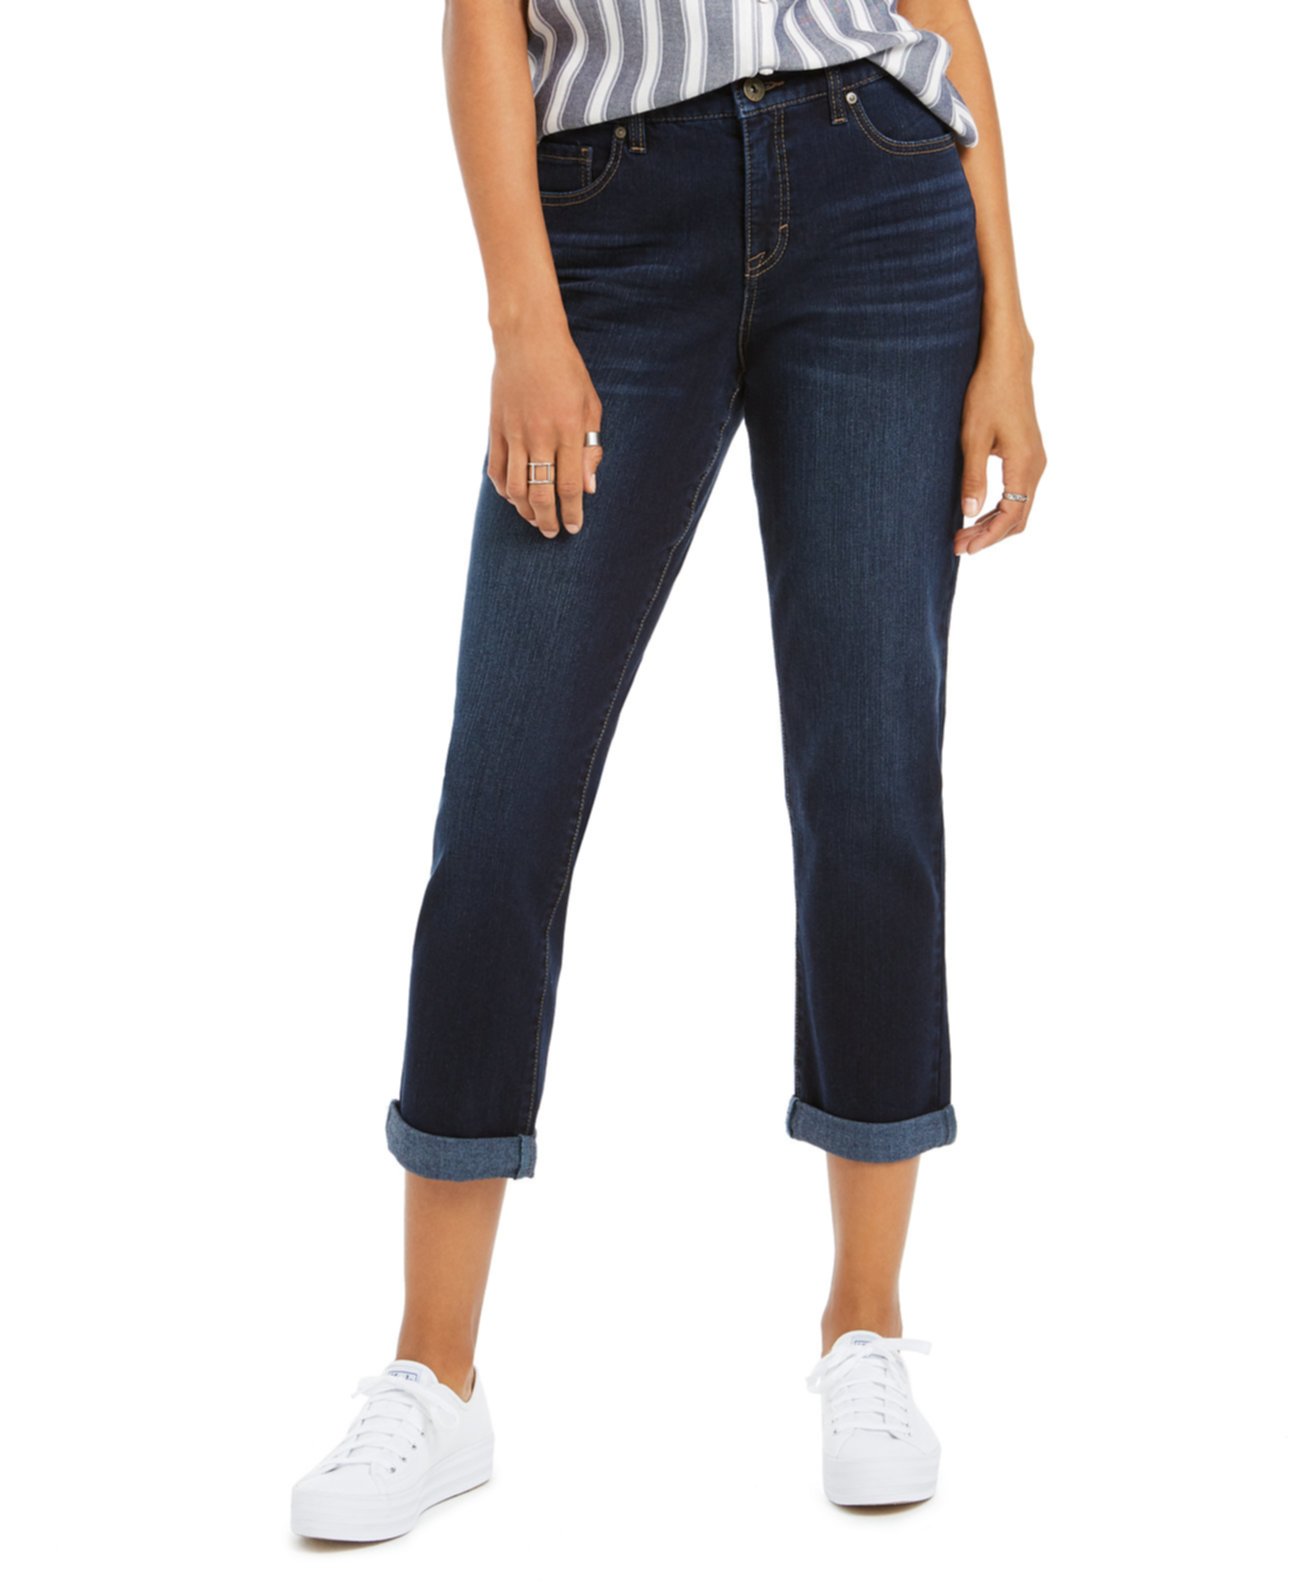 Пышные облегающие джинсы Girlfriend с манжетами, созданные для Macy's Style & Co